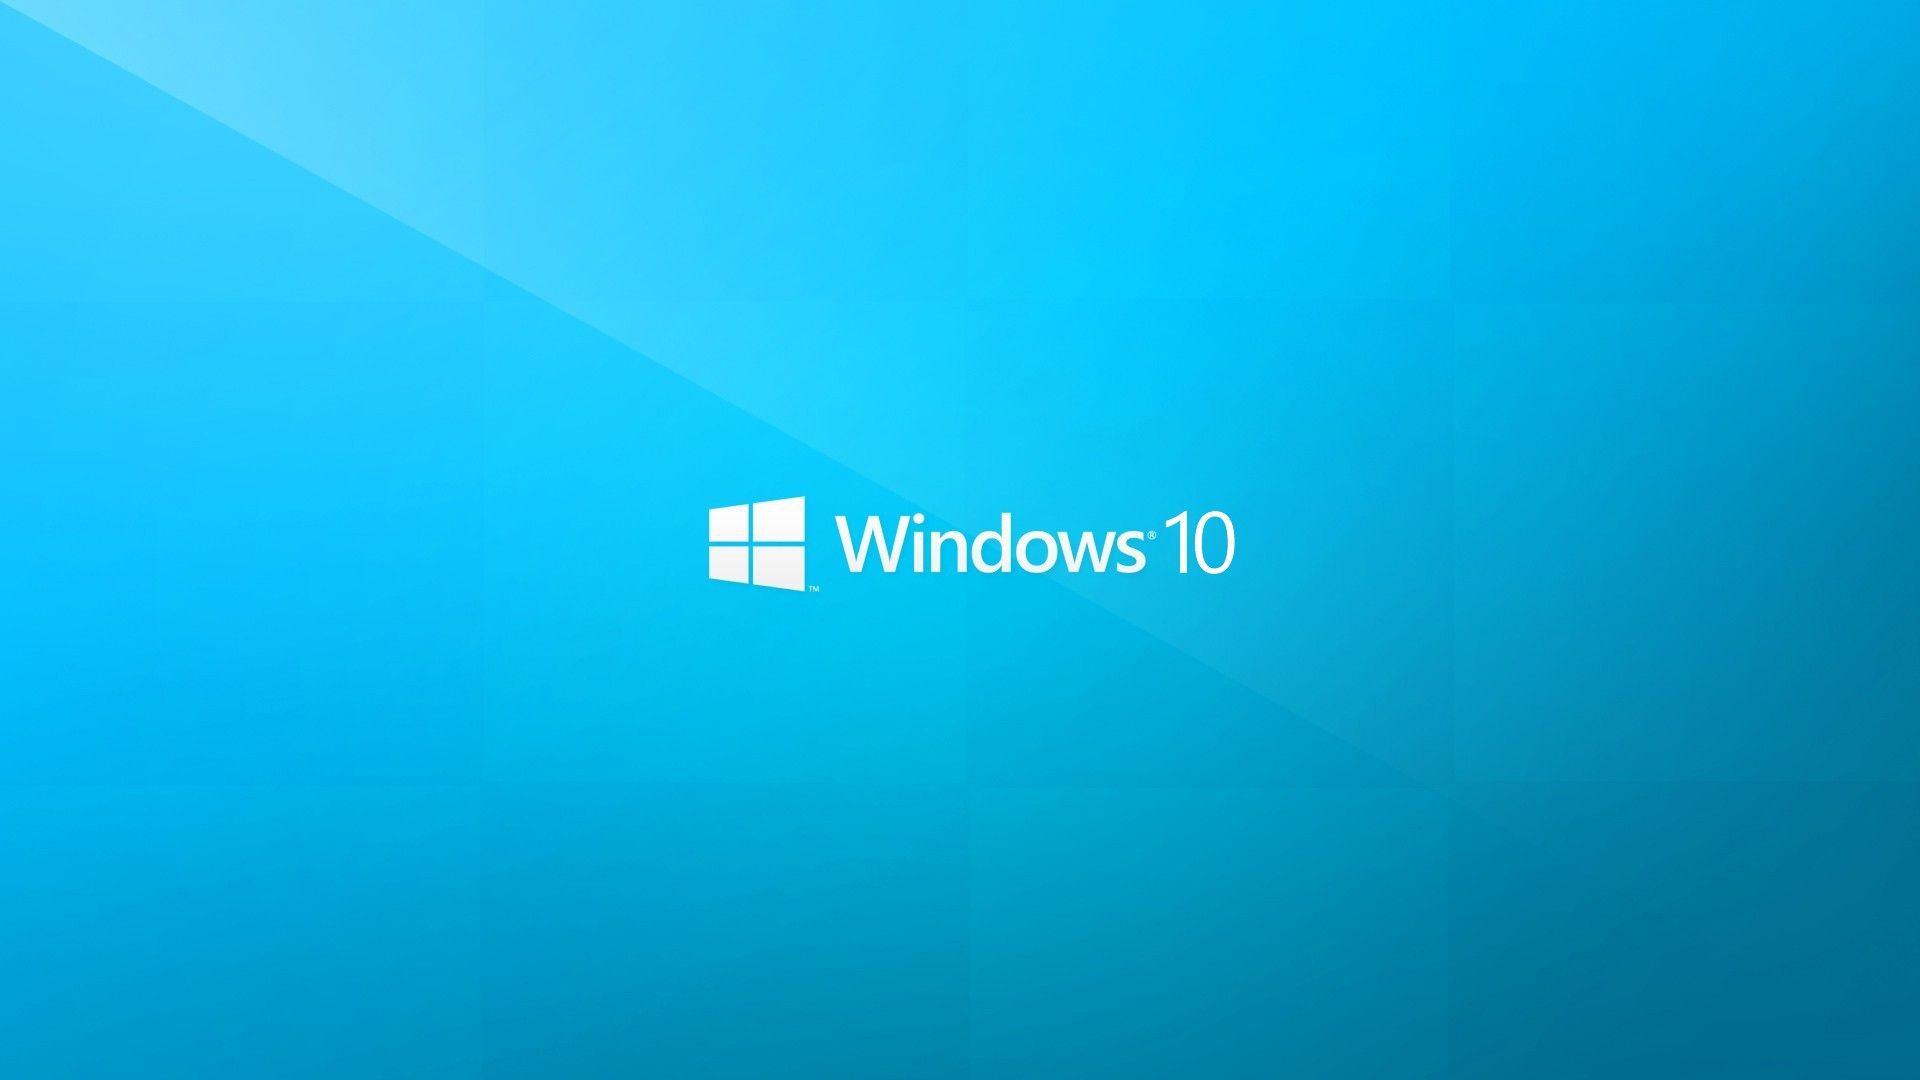 Windows 10 Pro Wallpapers - Top Những Hình Ảnh Đẹp